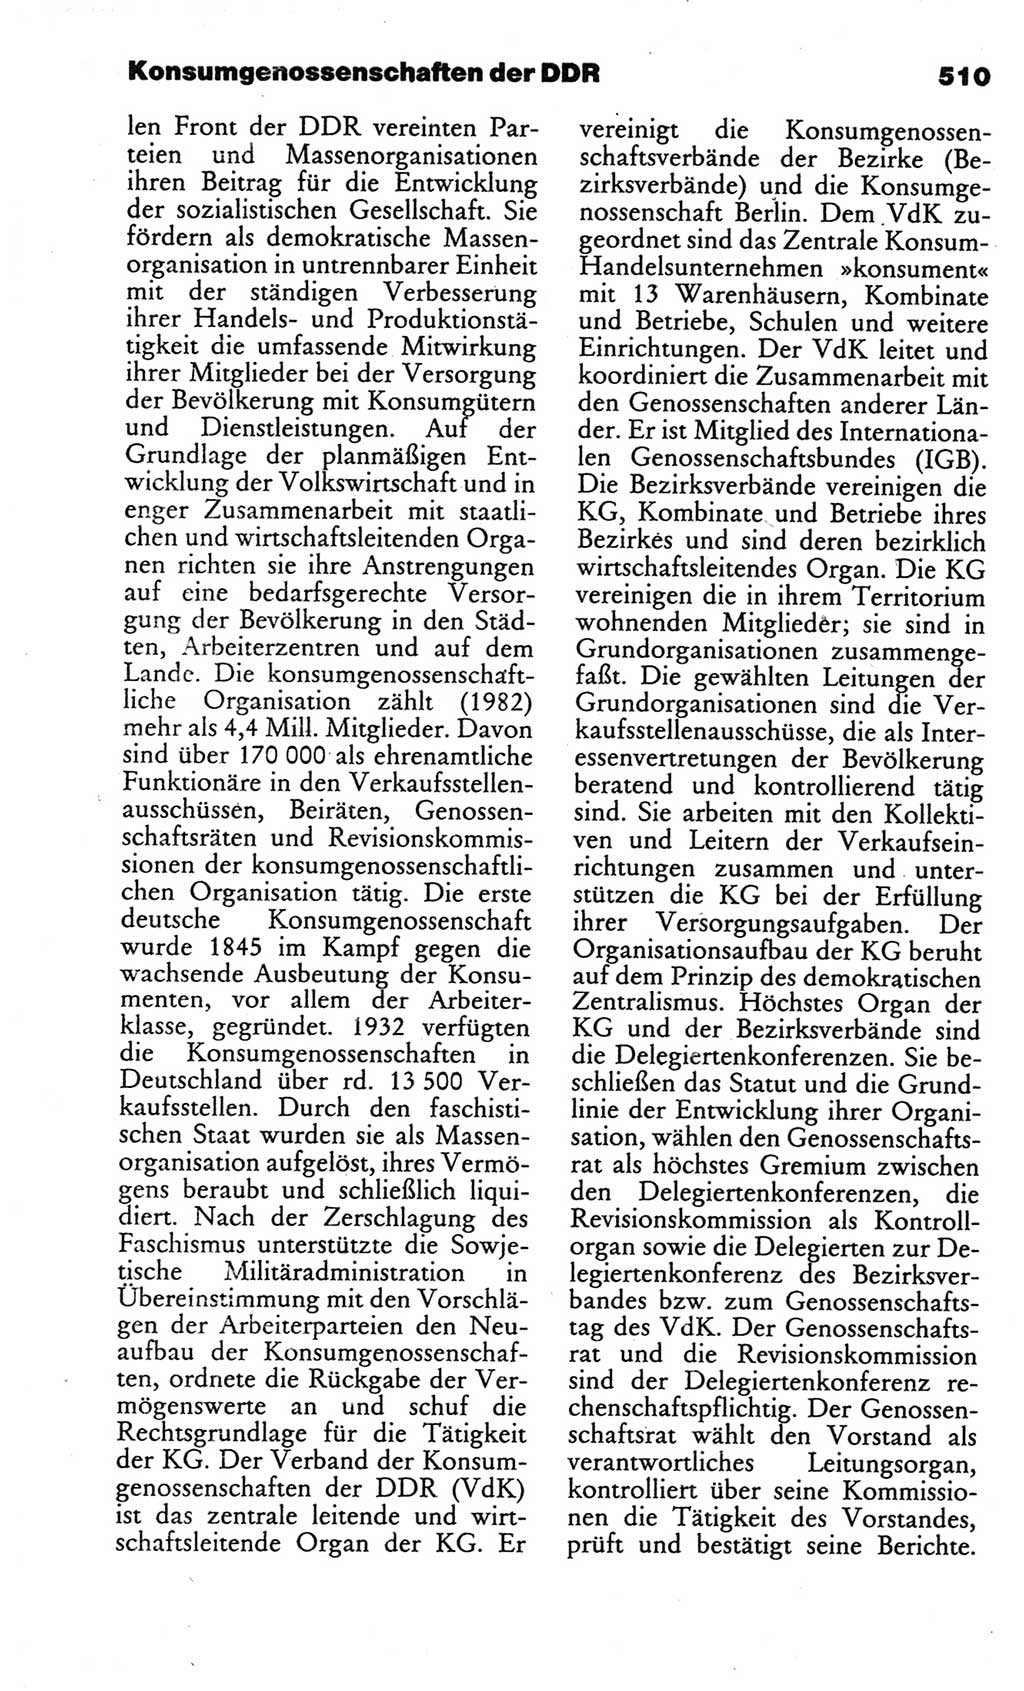 Kleines politisches Wörterbuch [Deutsche Demokratische Republik (DDR)] 1986, Seite 510 (Kl. pol. Wb. DDR 1986, S. 510)